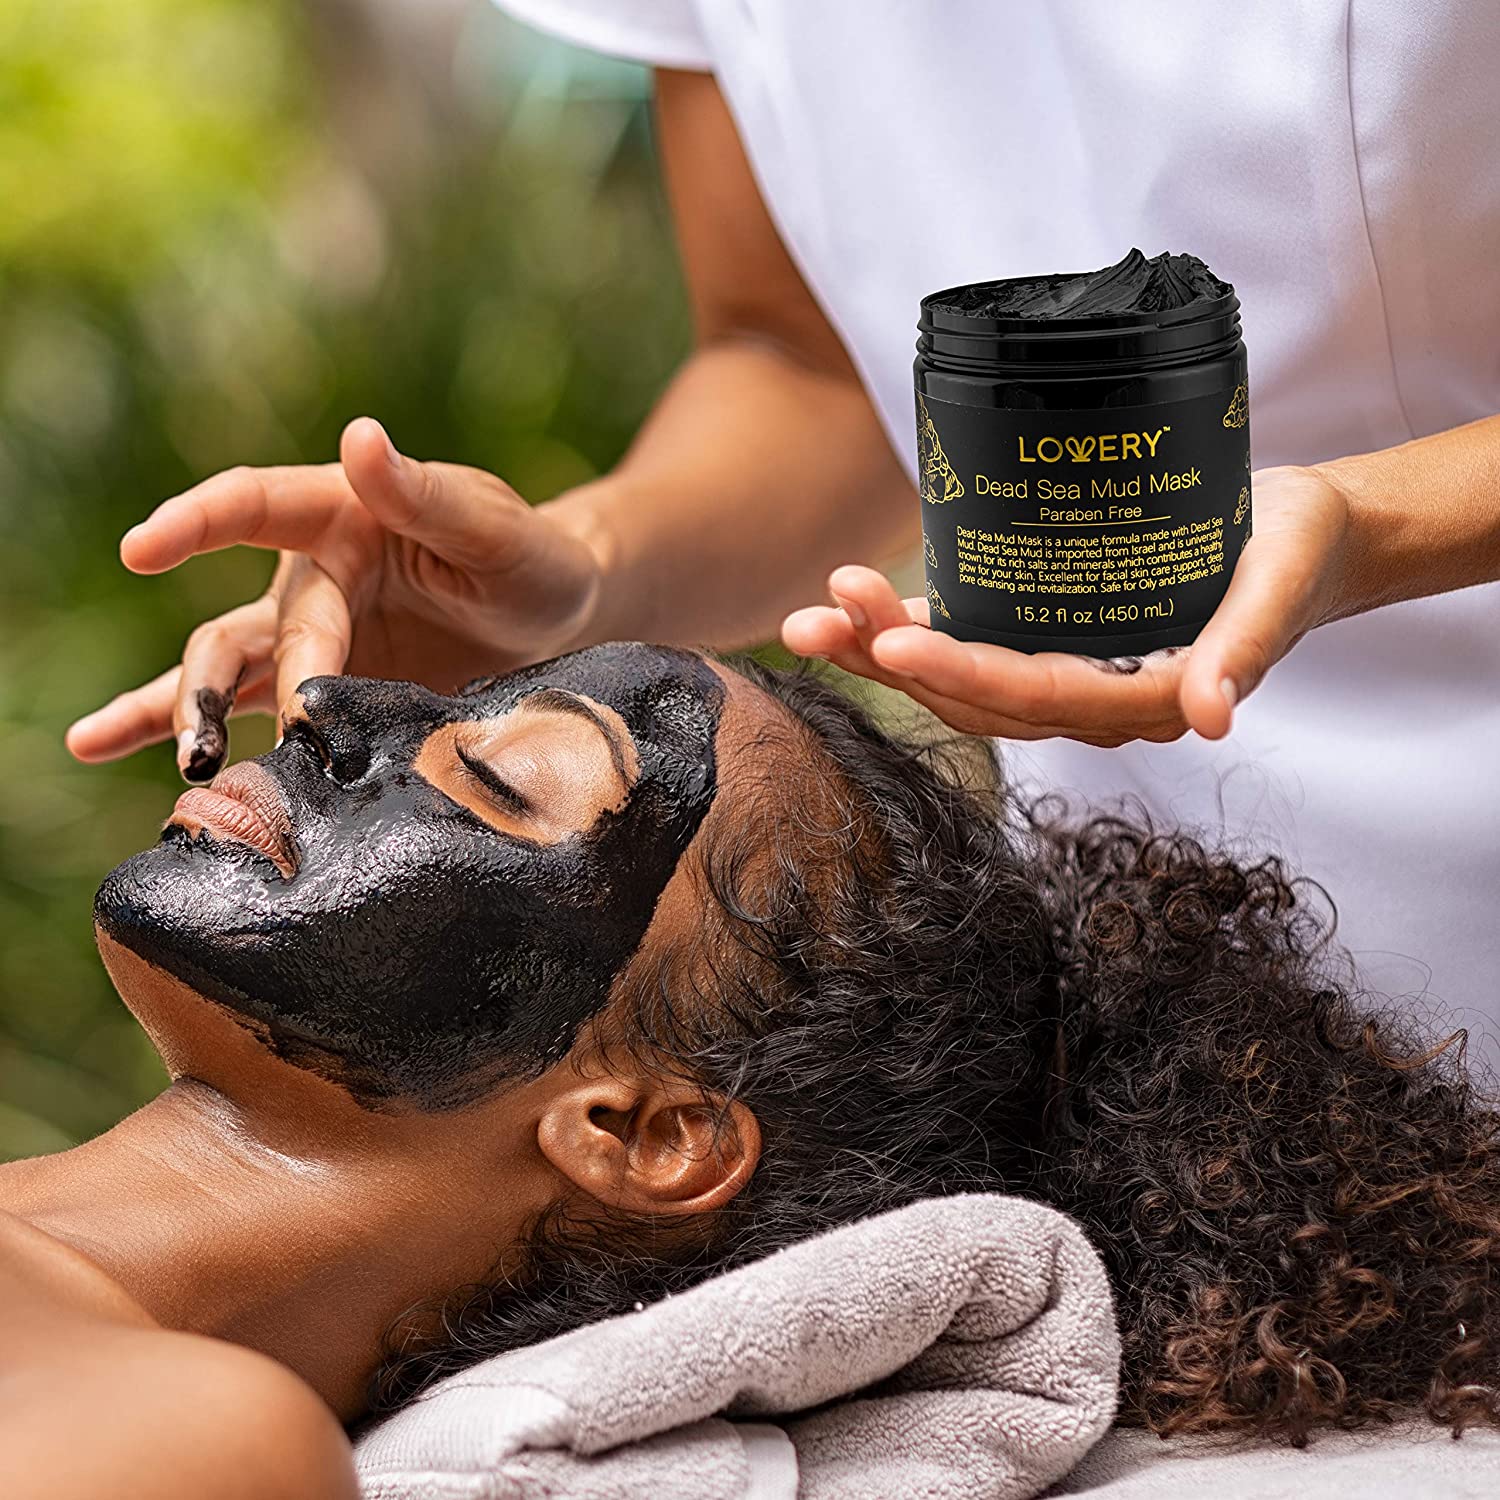 Dead Sea Mud Mask | Lovery.com care, self care gift, acne remover